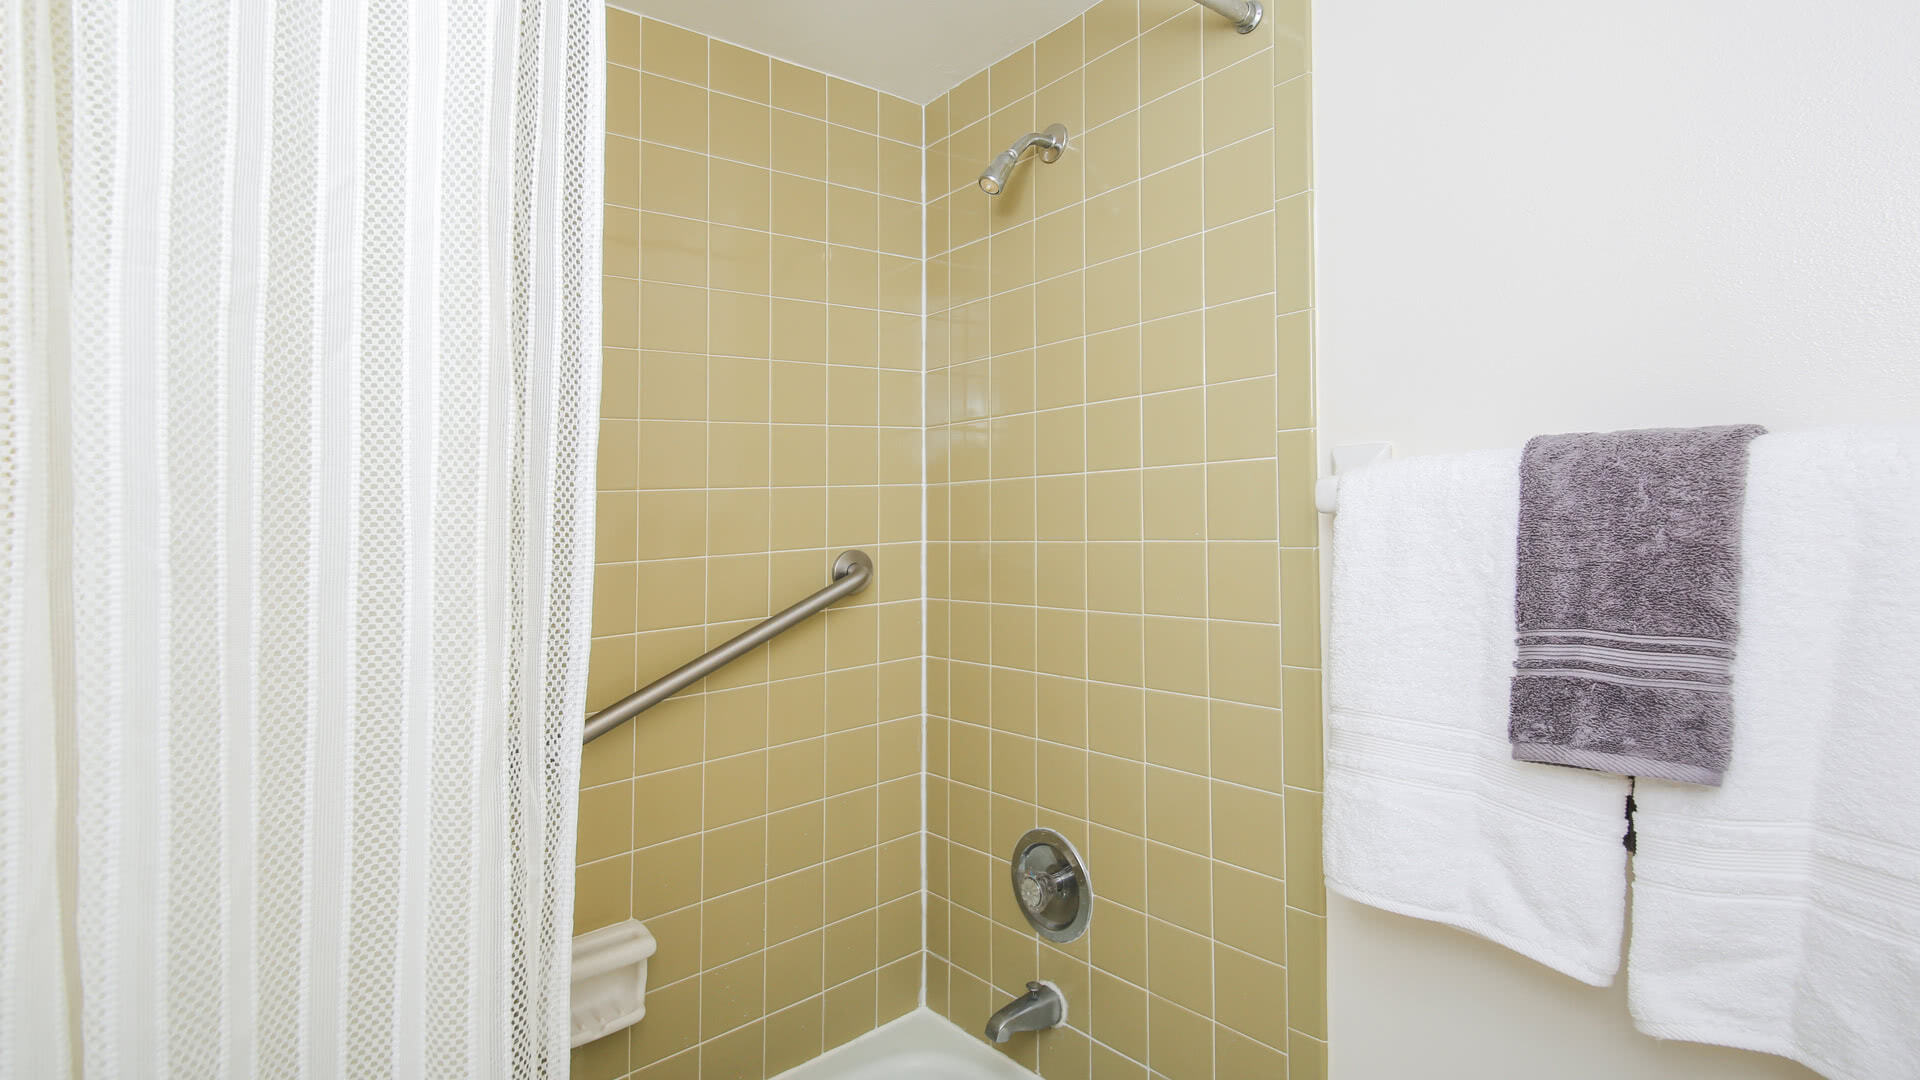 Master Bathroom Angle
Shower/Tub Combo